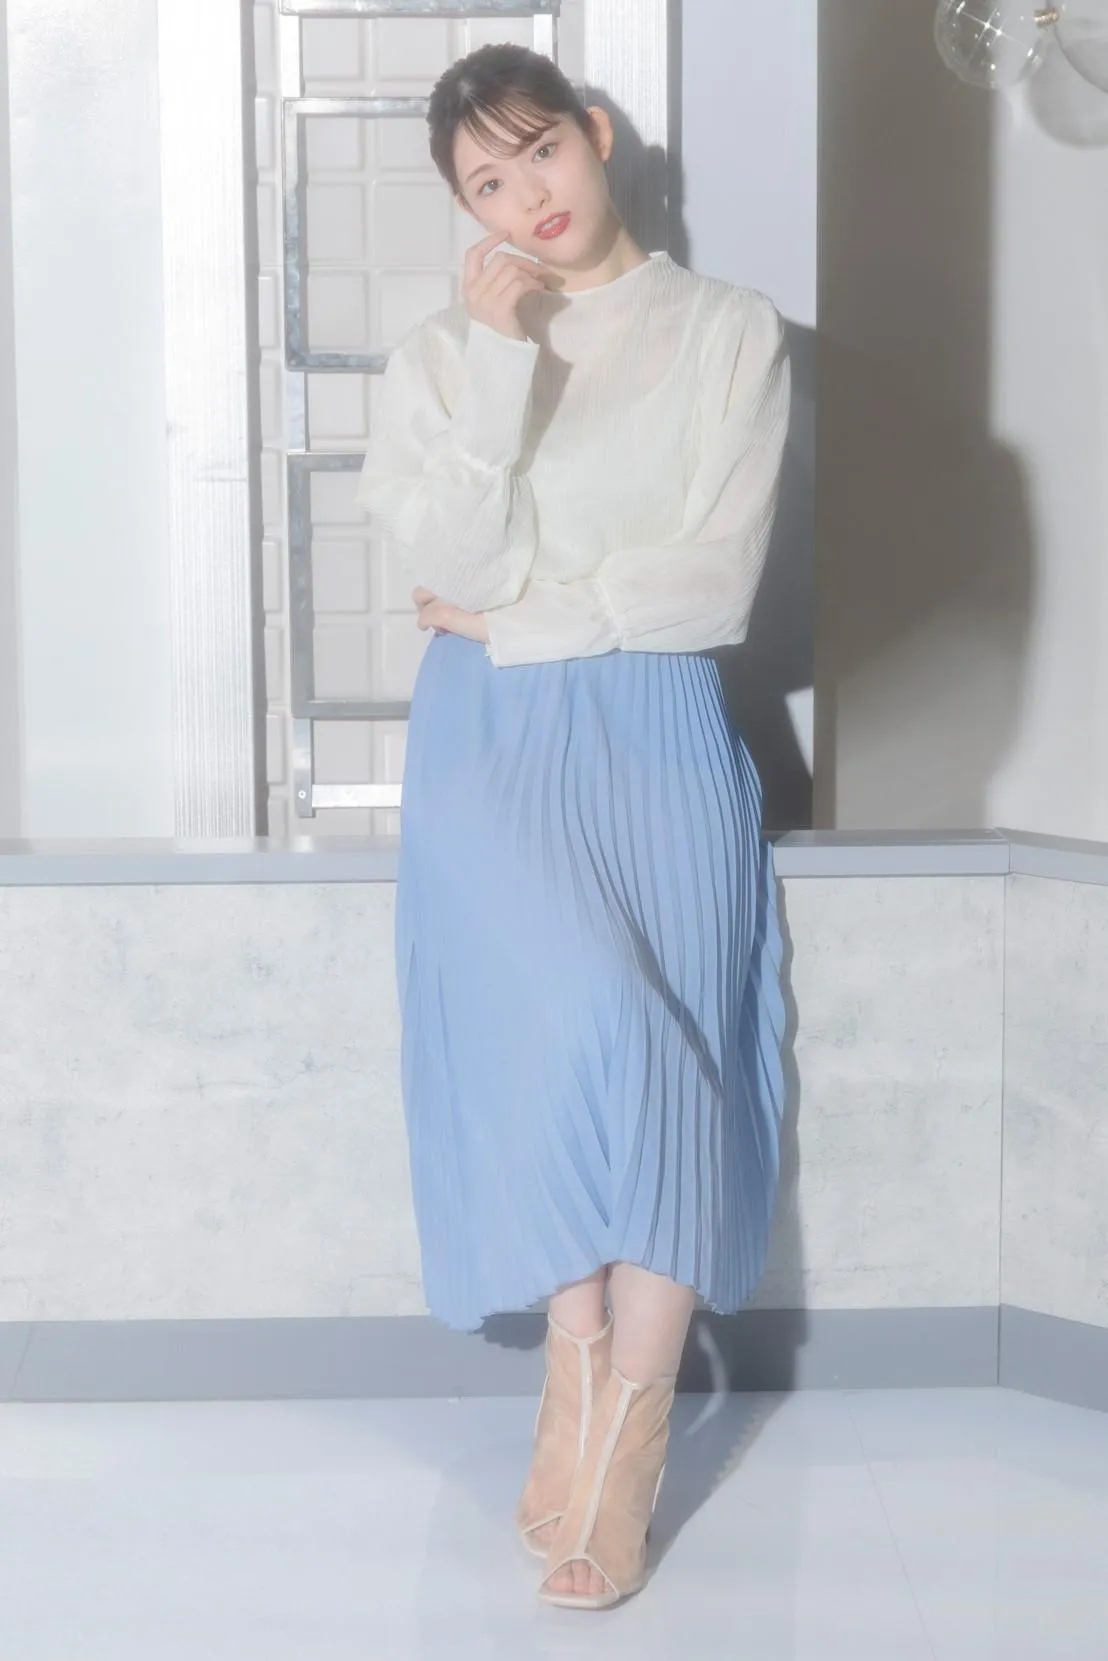  【全身写真】透明感…！ブルーのスカートが爽やかなコーデの松村沙友理